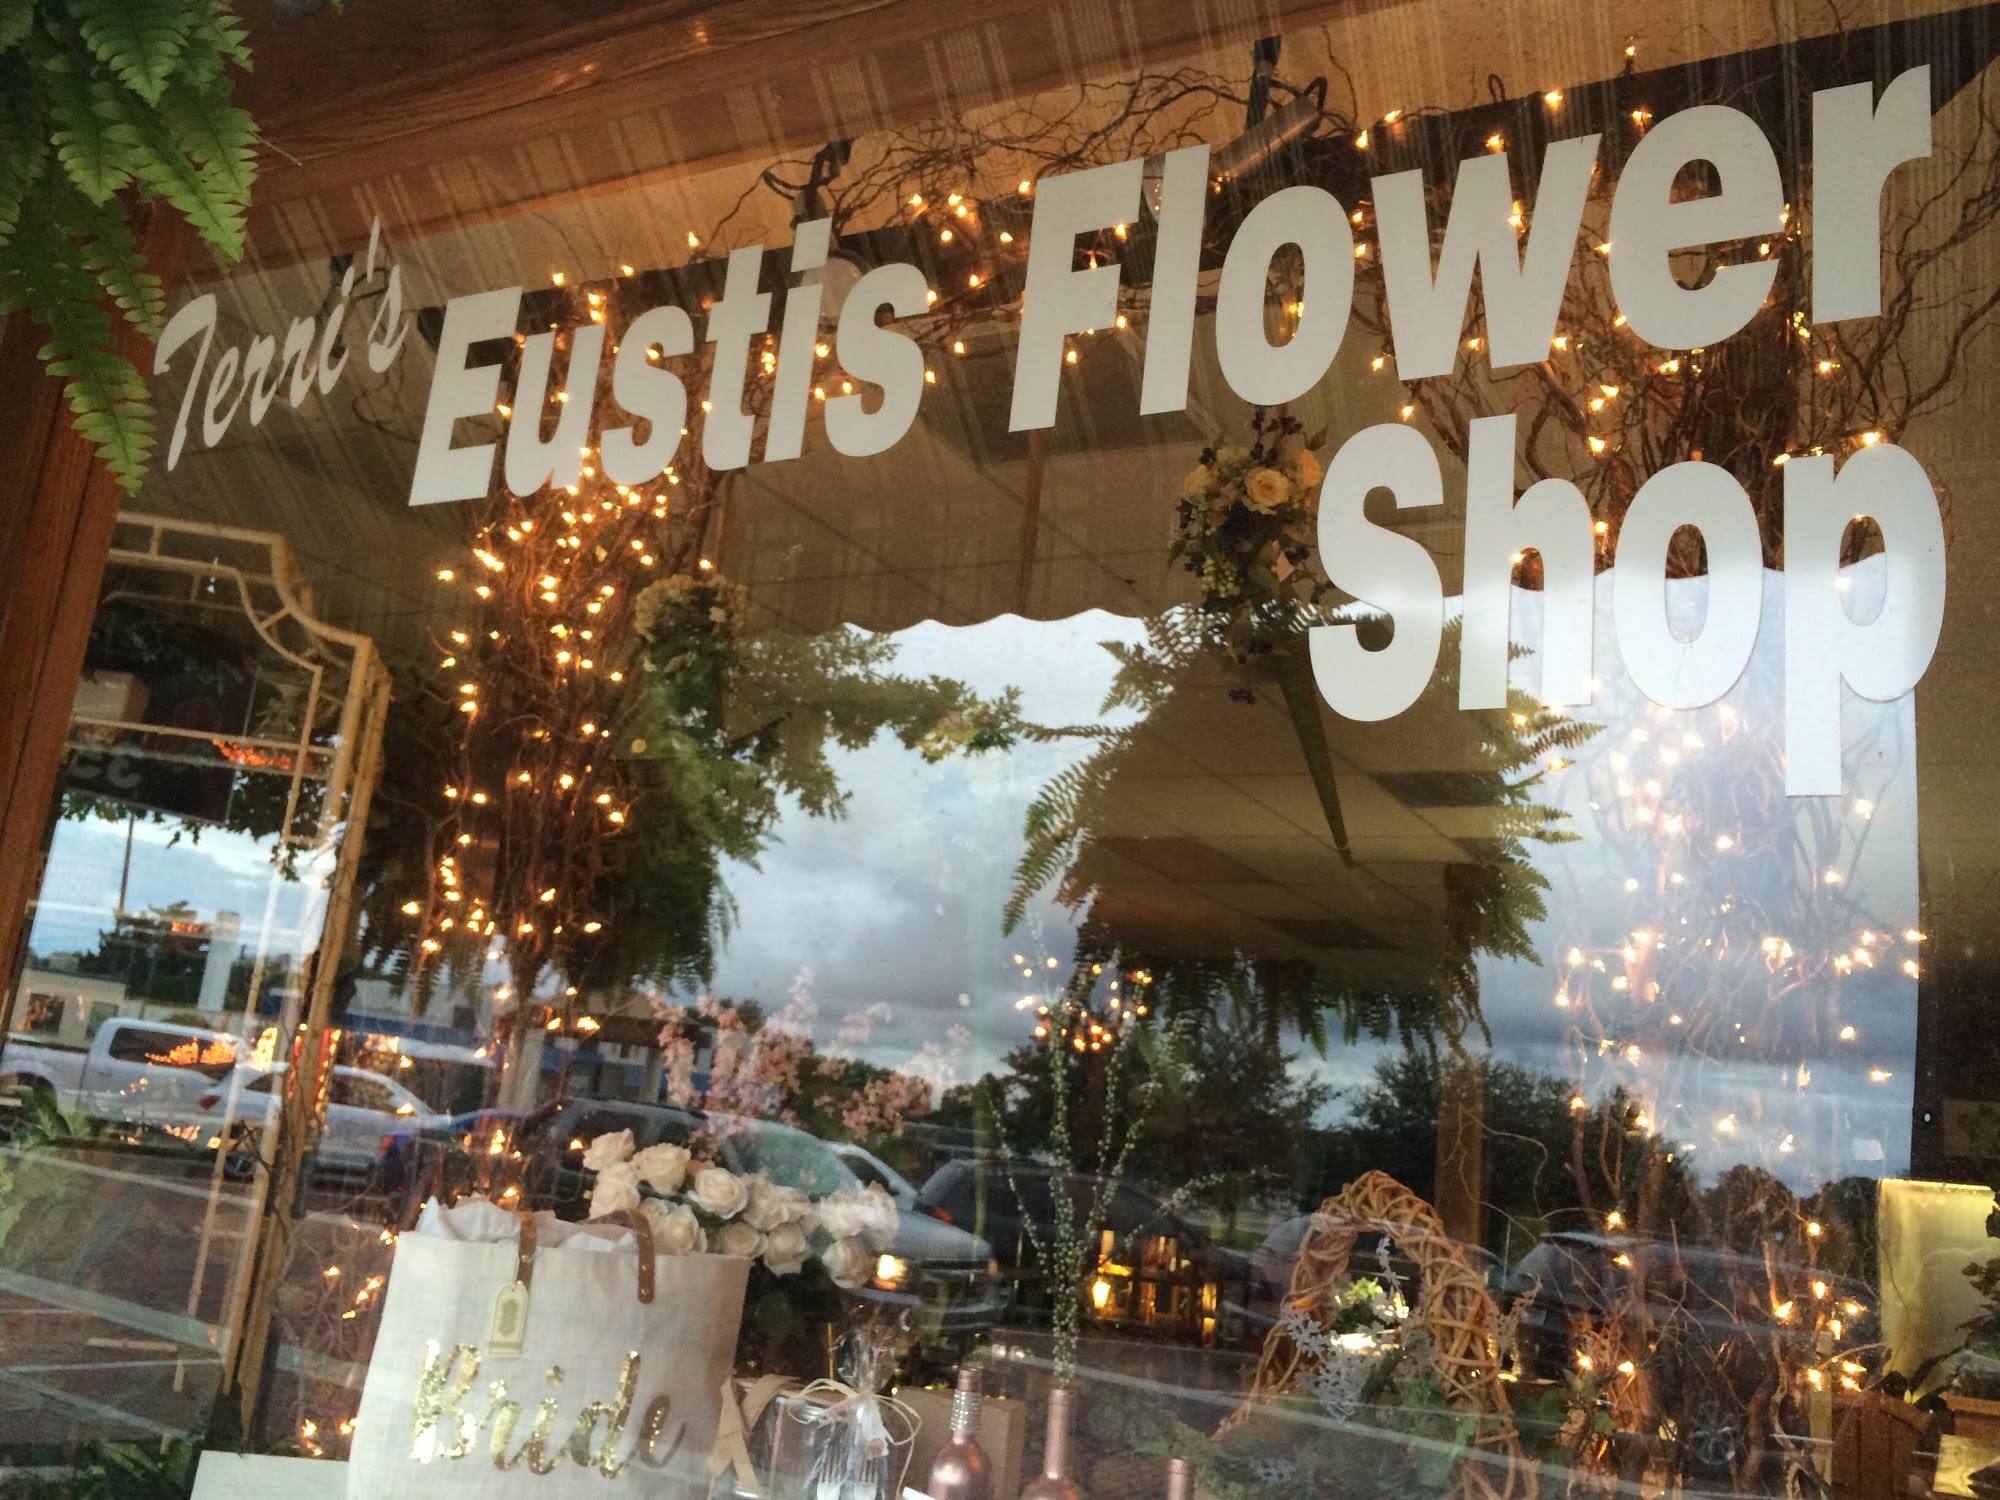 Terri's Eustis Flower Shop